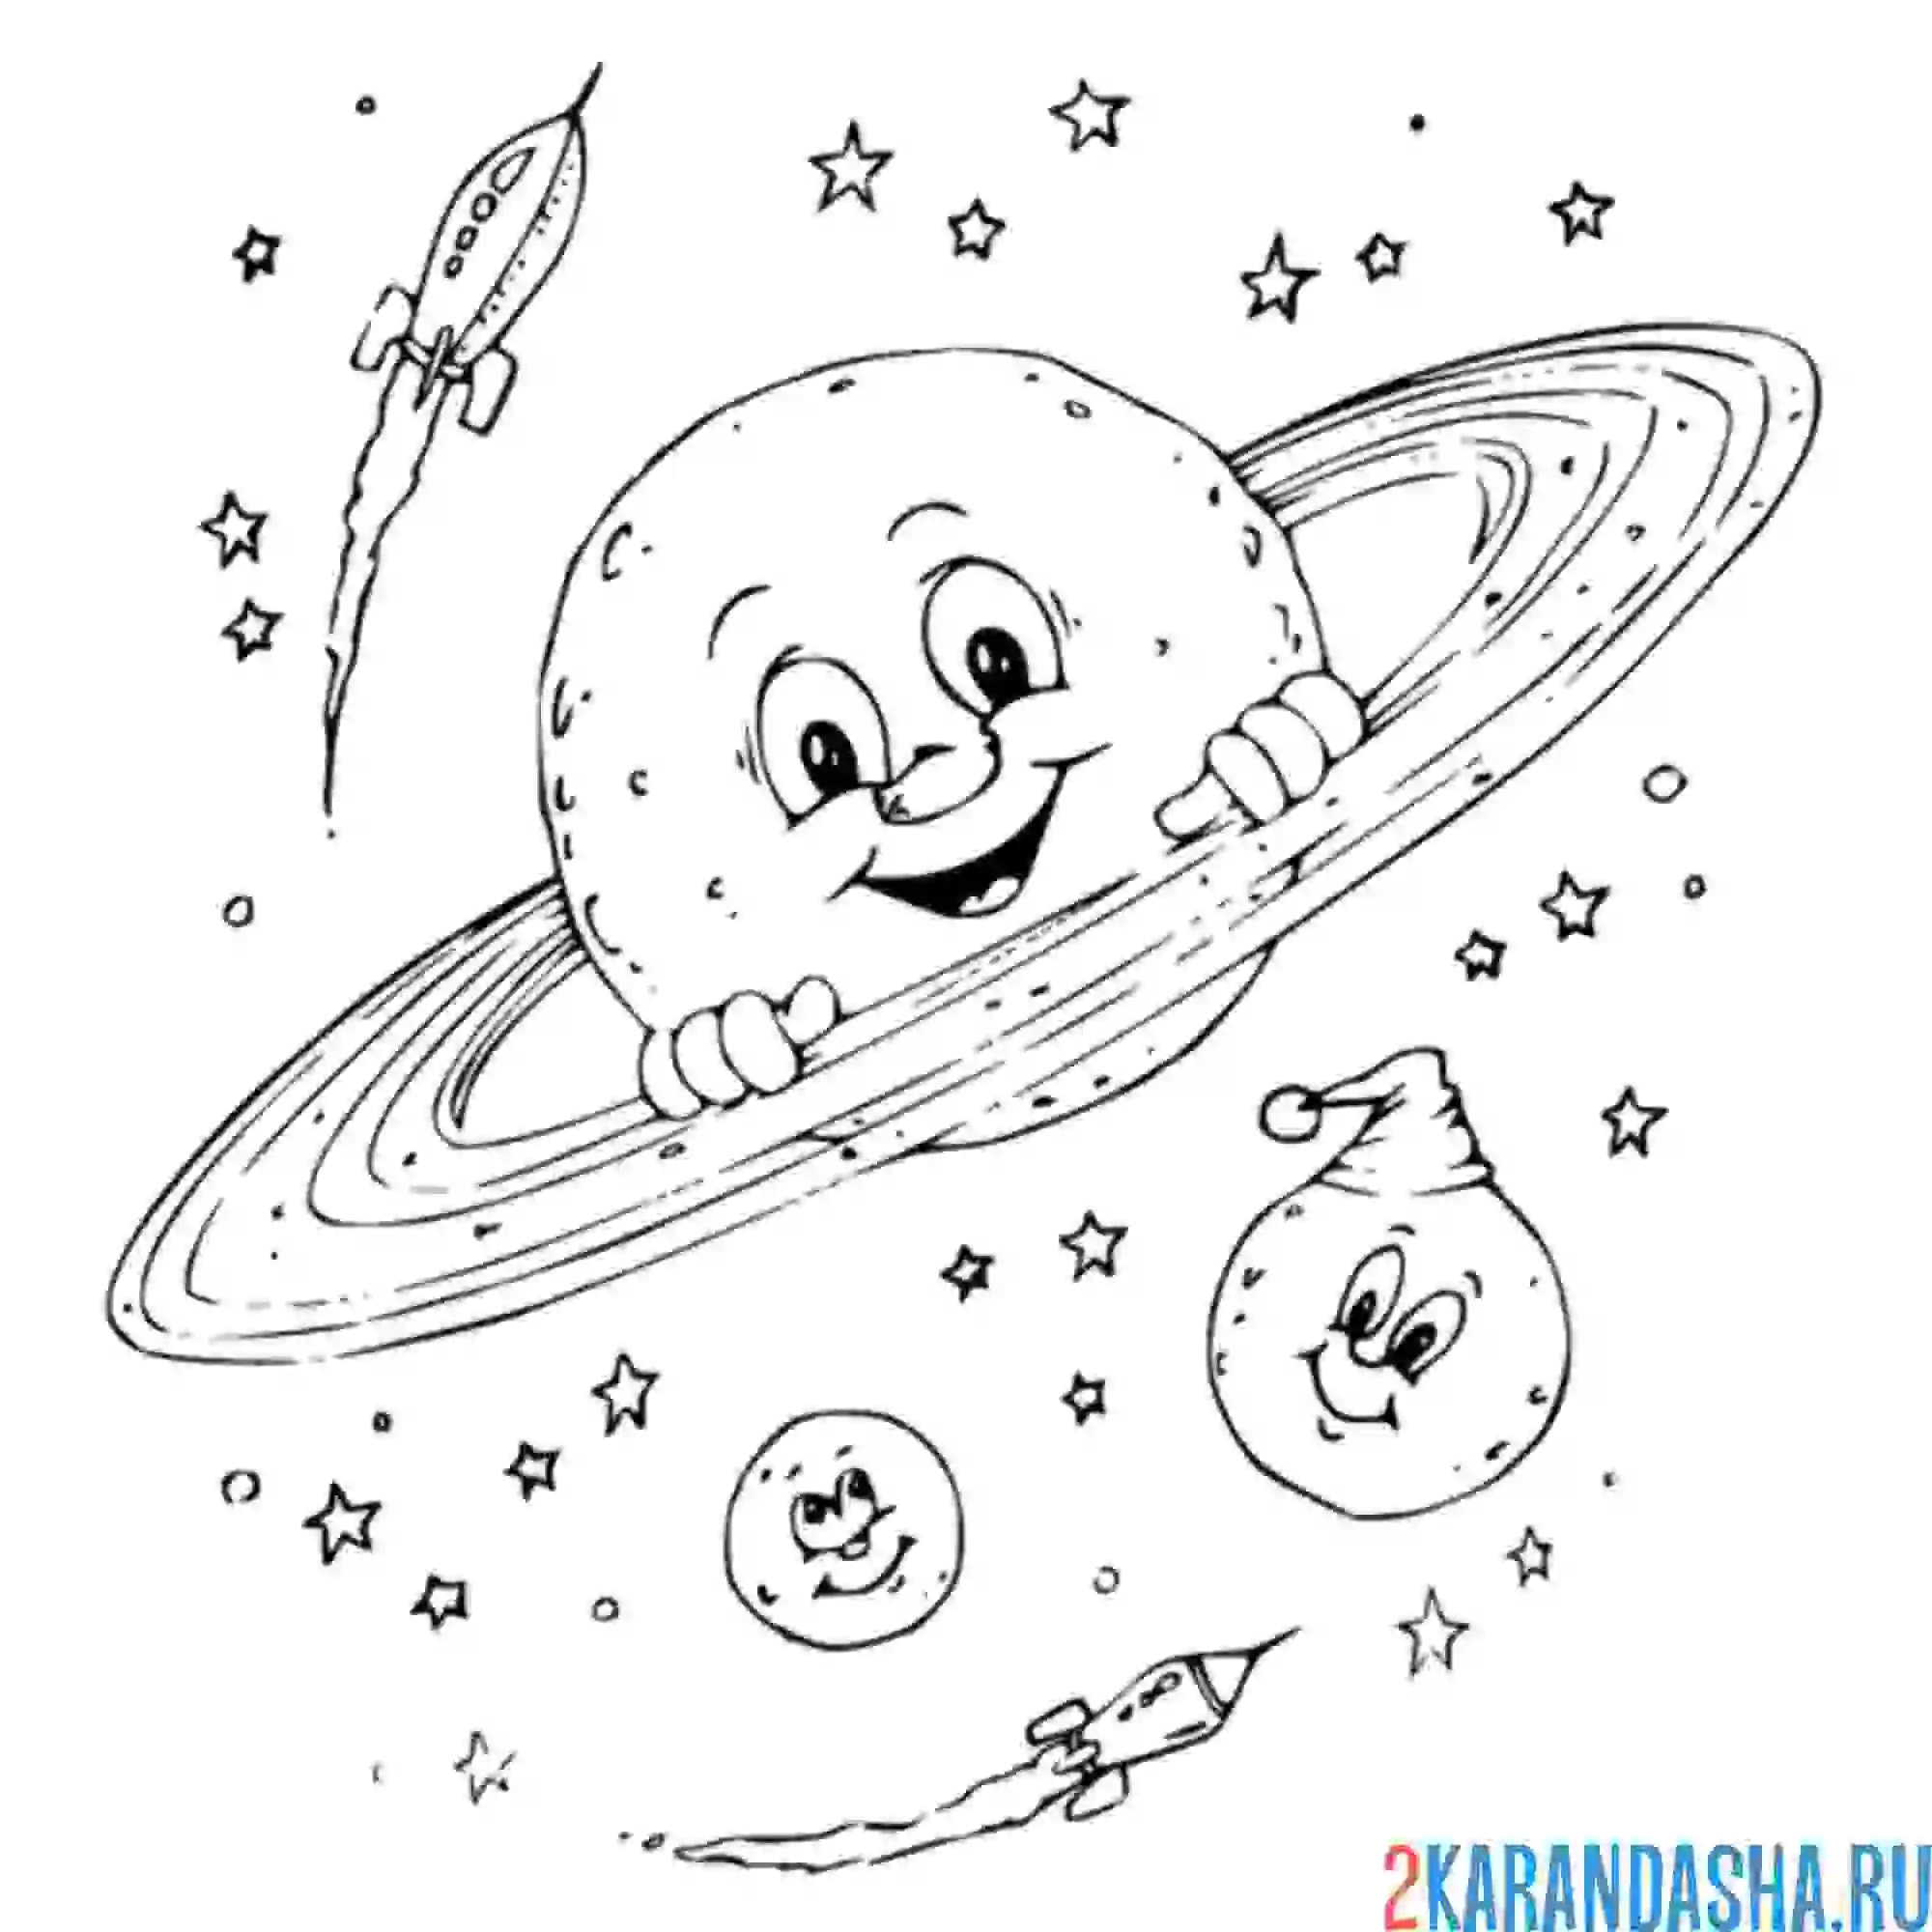 Тема космос для детей 7 лет. Космос раскраска для детей. Раскраска. В космосе. Раскраски на космическую тему. Раскраска космос и планеты для детей.